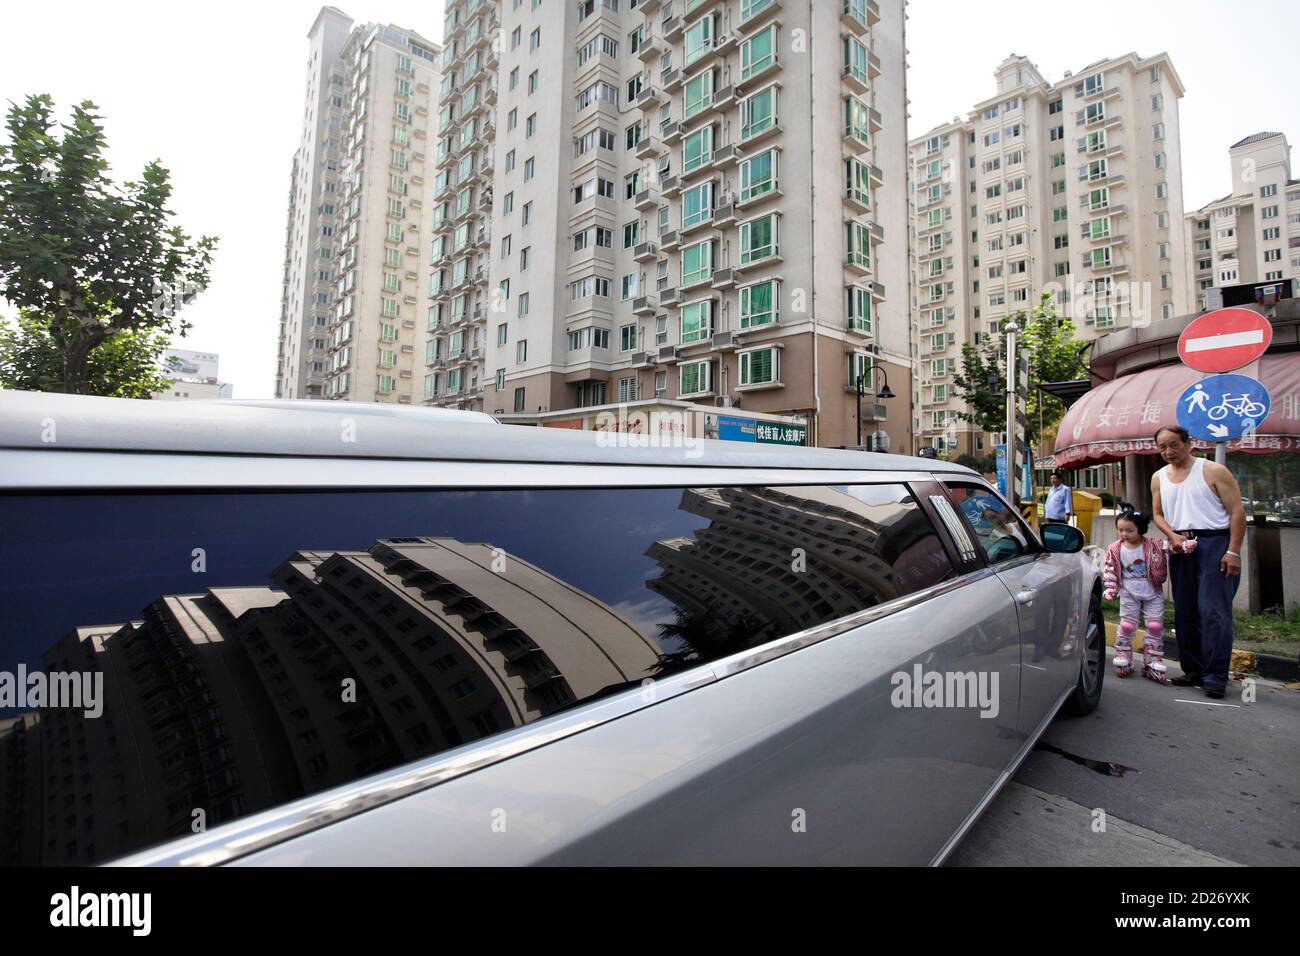 Un homme emmène sa petite-fille pour voir une voiture de limousine Chrysler  pendant qu'il attend de prendre un couple le jour de leur mariage à  Shanghai le 20 septembre 2009. Créé en